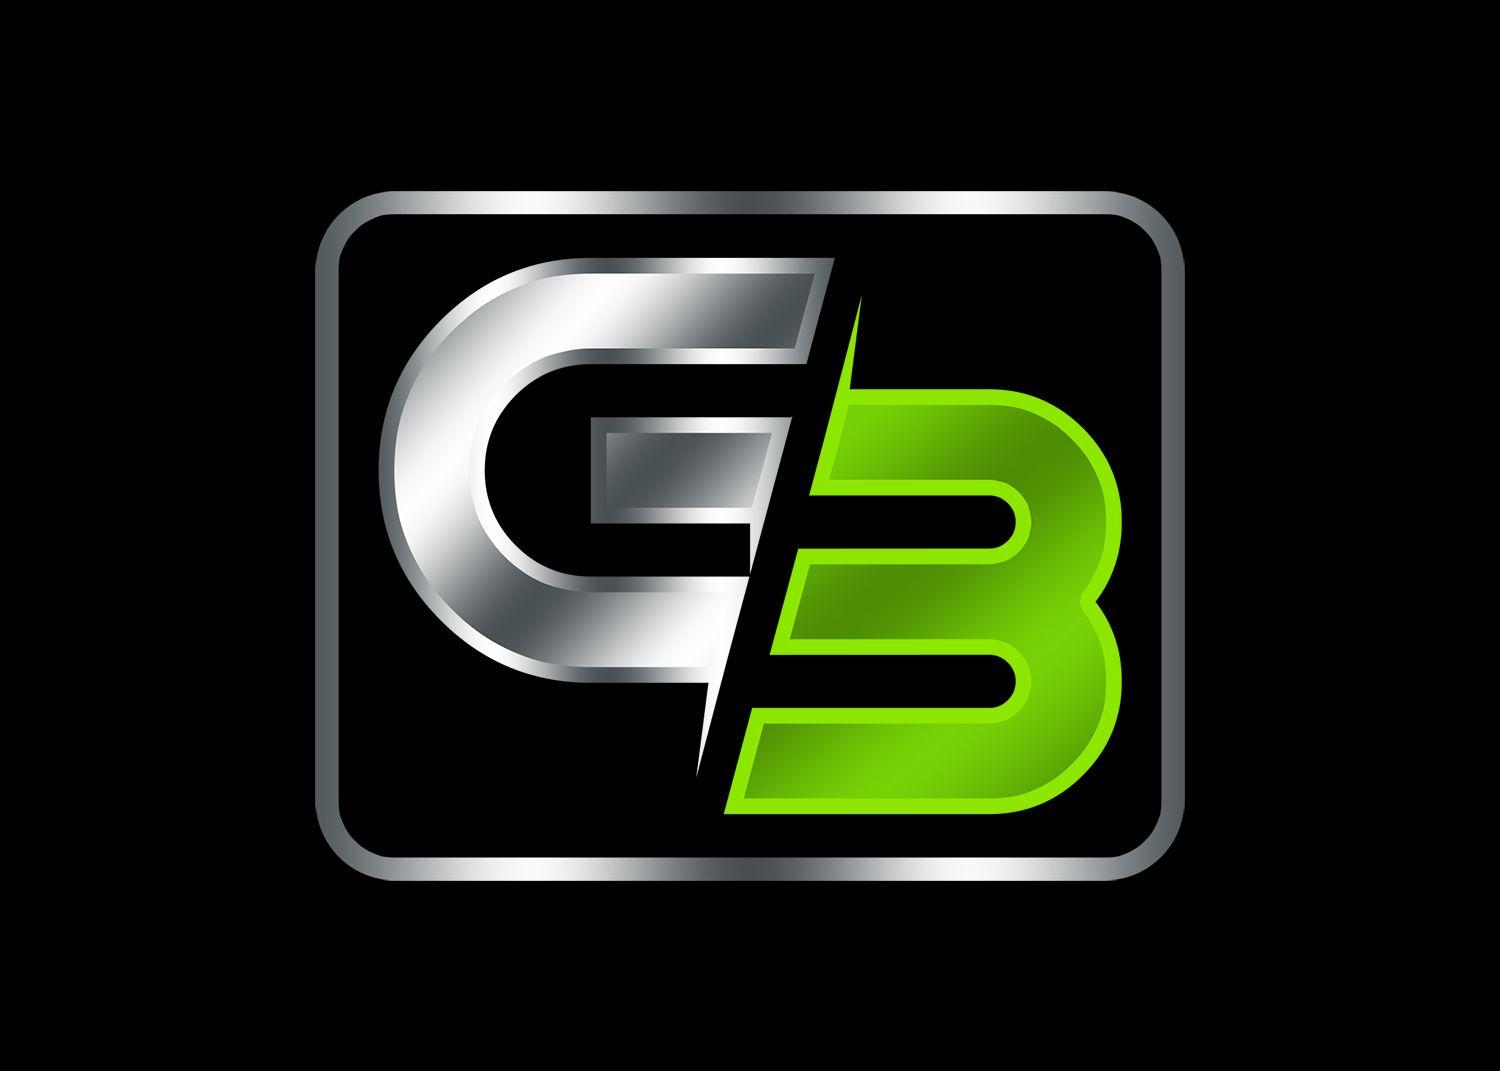 G3 Logo - Modern, Elegant Logo Design for G3 only by Design Ninja 47. Design